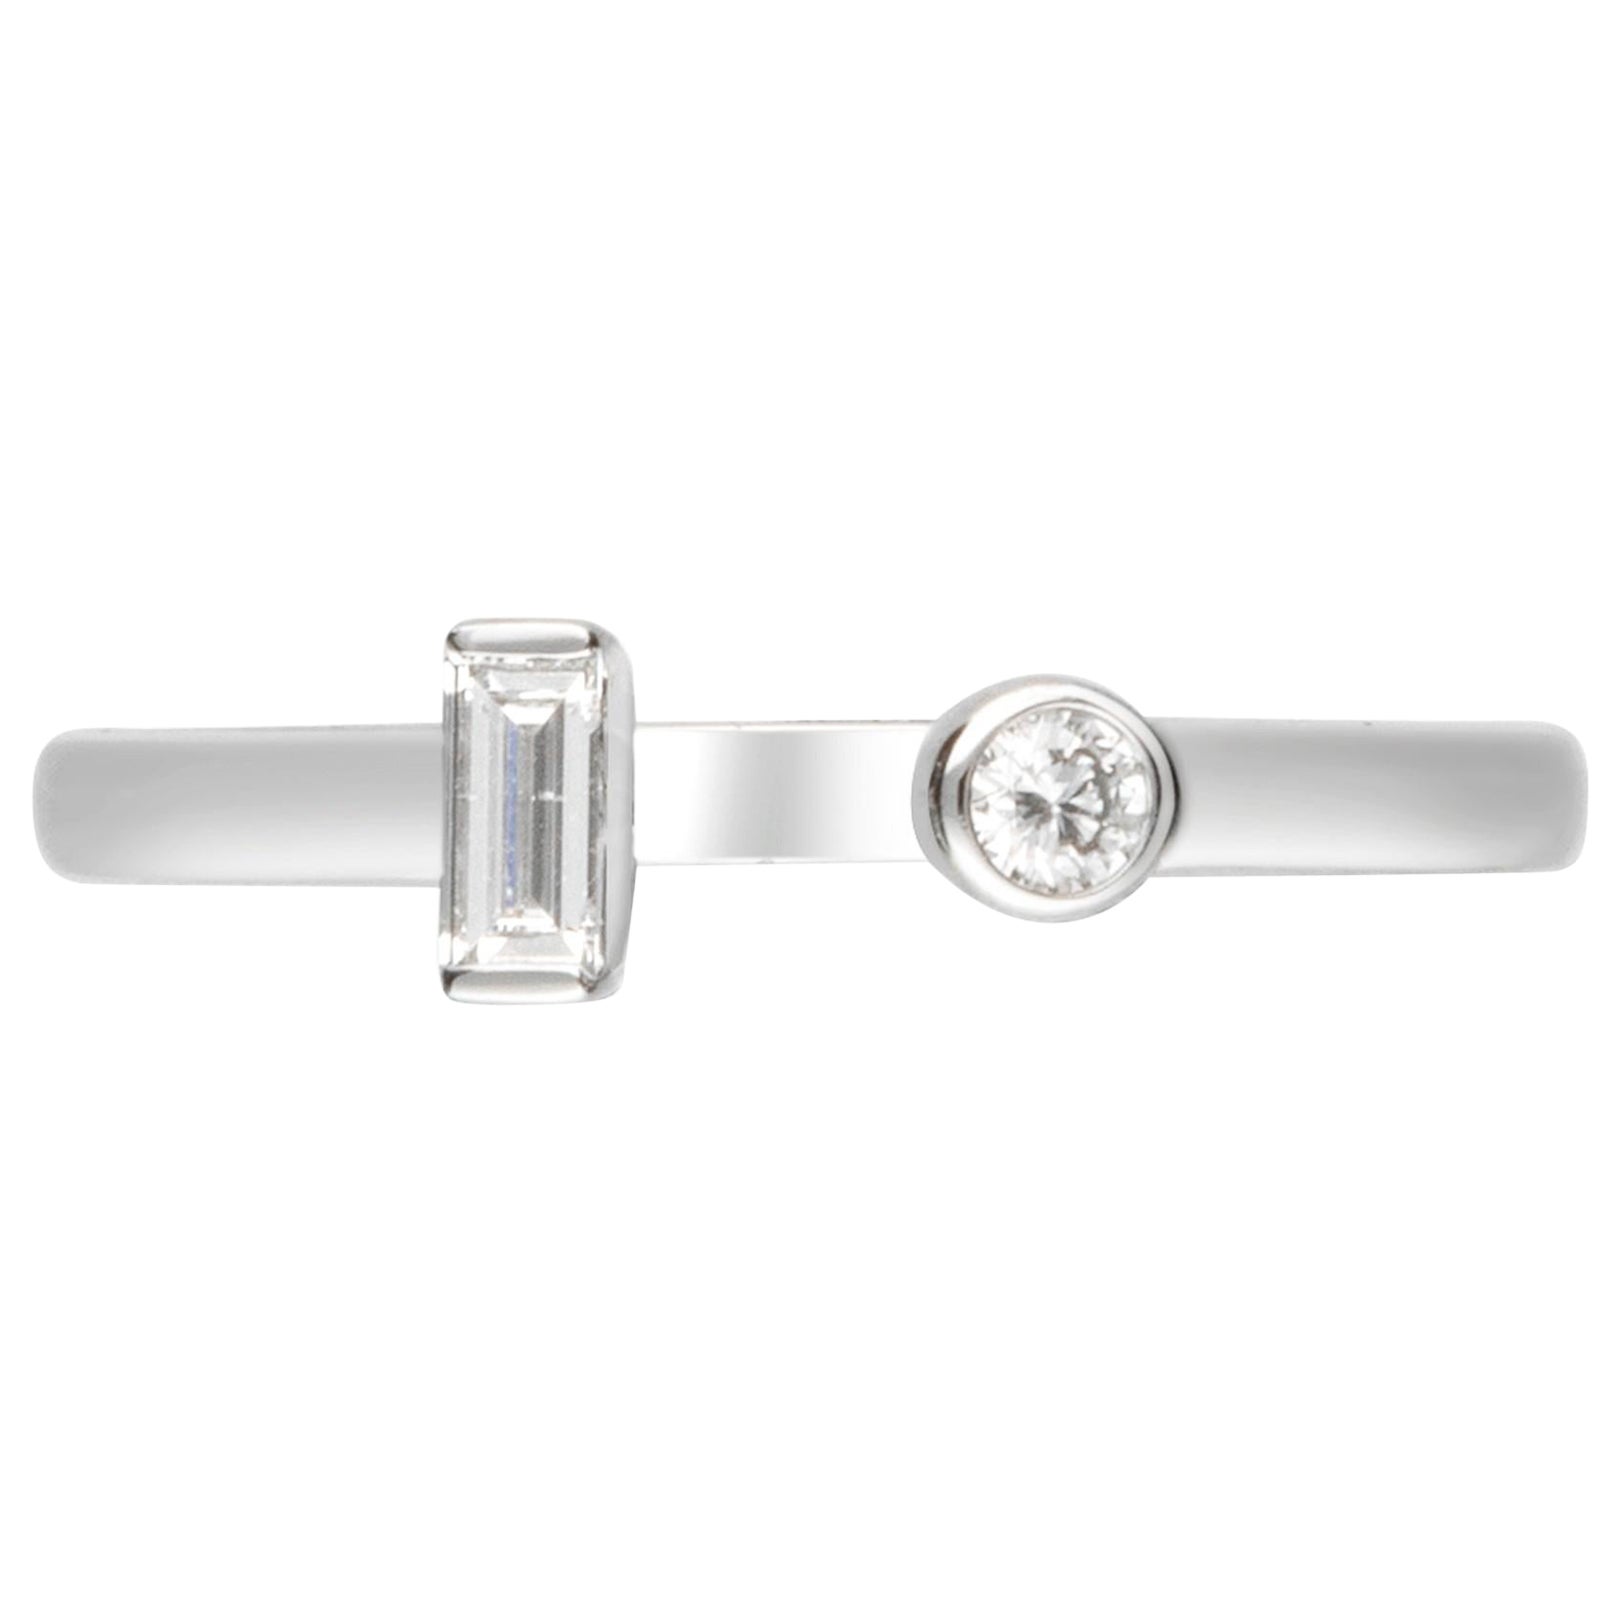 Gin & Grace 18K White Gold Natural Diamond (I1) Ring for Women.